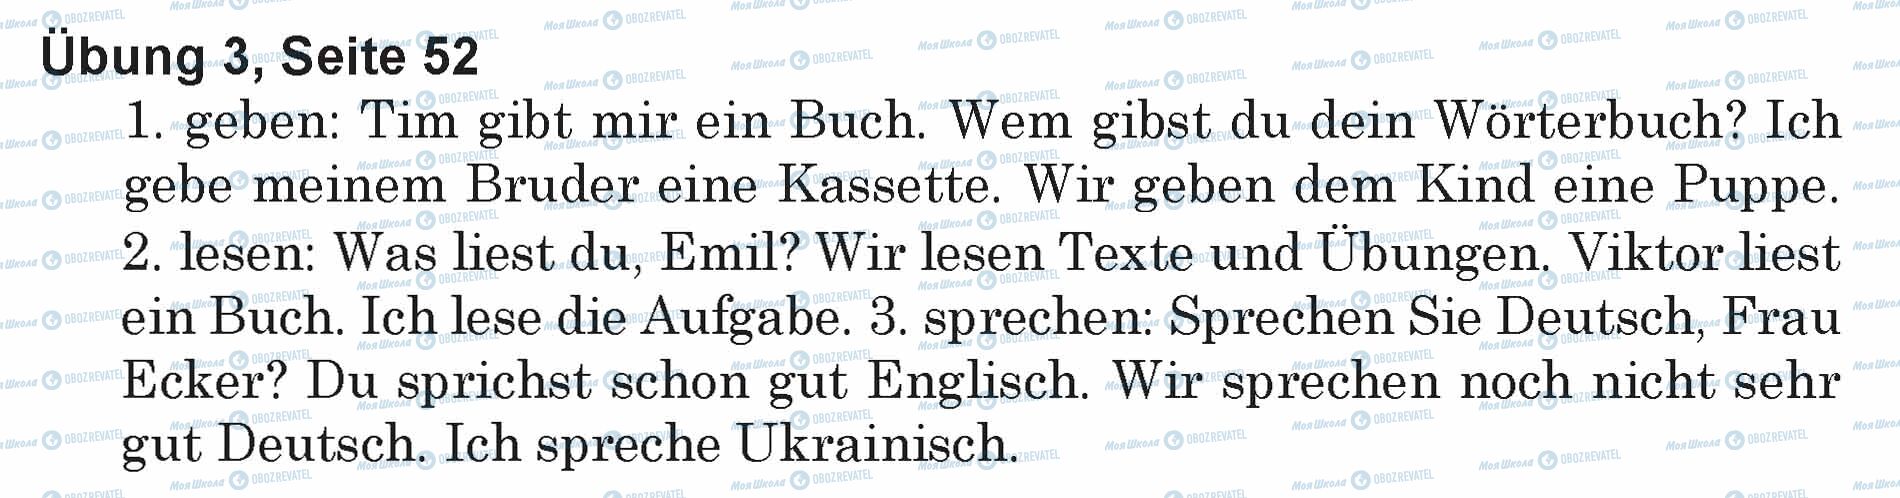 ГДЗ Німецька мова 5 клас сторінка Ubung 3, Seite 52